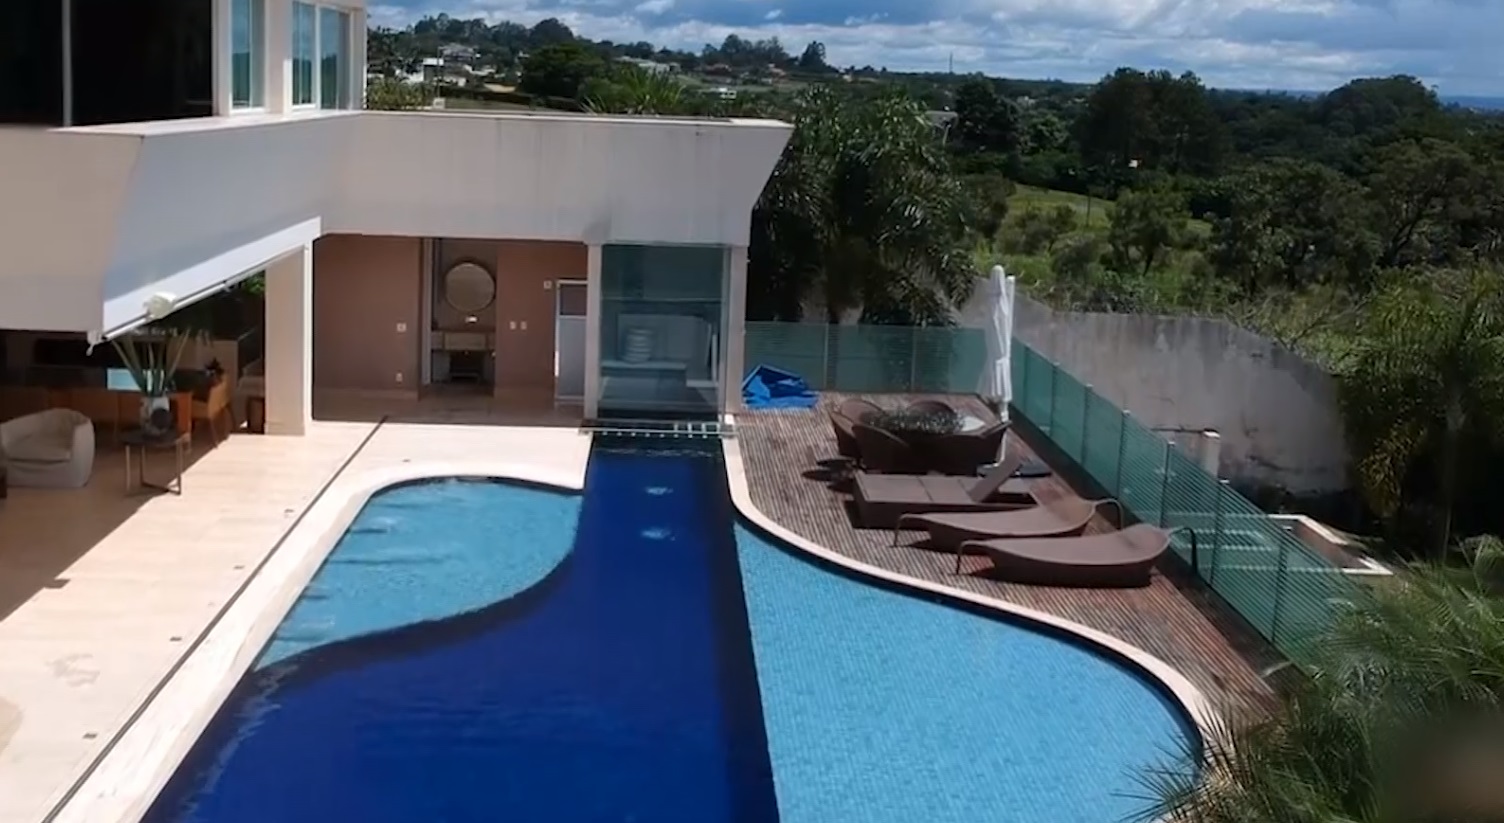 Mansão de Flávio Bolsonaro tem uma ampla piscina